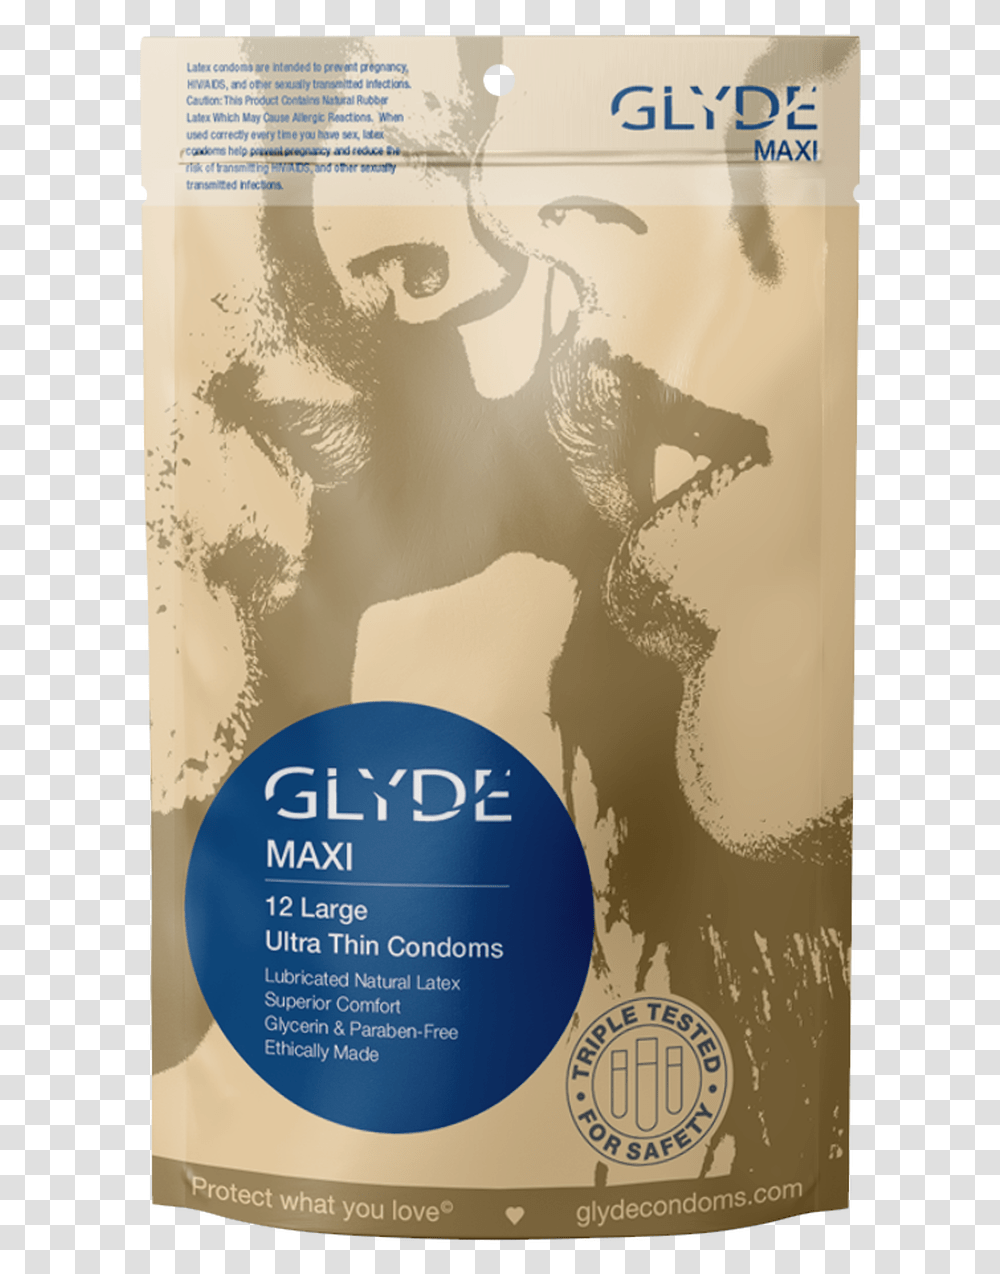 Glyde Maxi Extra Large Xl Vegan Condoms 12 Count 5 Glyde America Condoms, Poster, Advertisement, Flyer, Paper Transparent Png